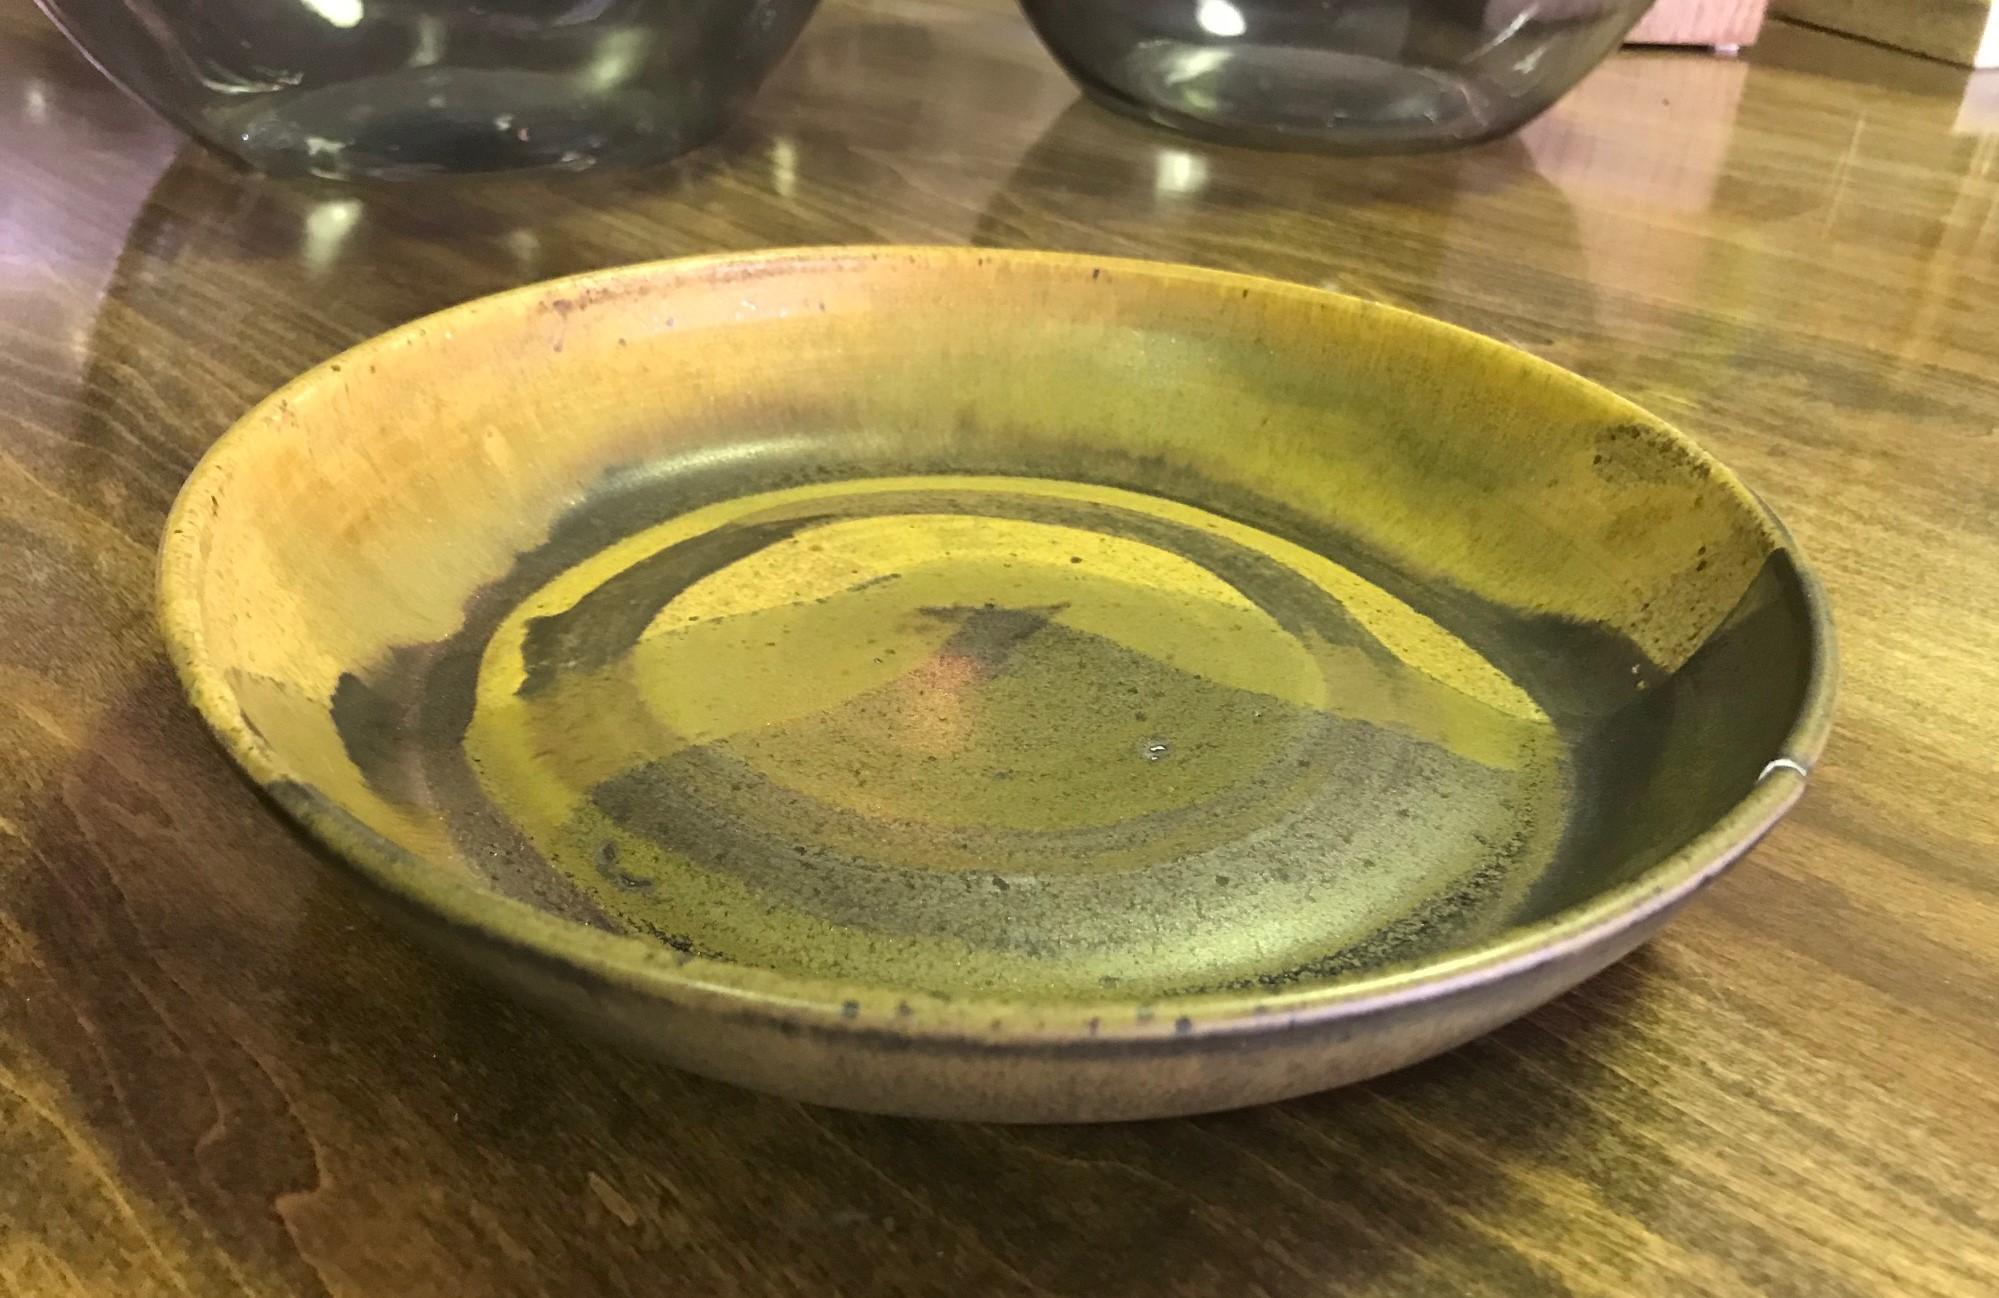 Hand-Crafted Toshiko Takaezu Signed Mid-Century Modern Japanese Glazed Ceramic Pottery Bowl